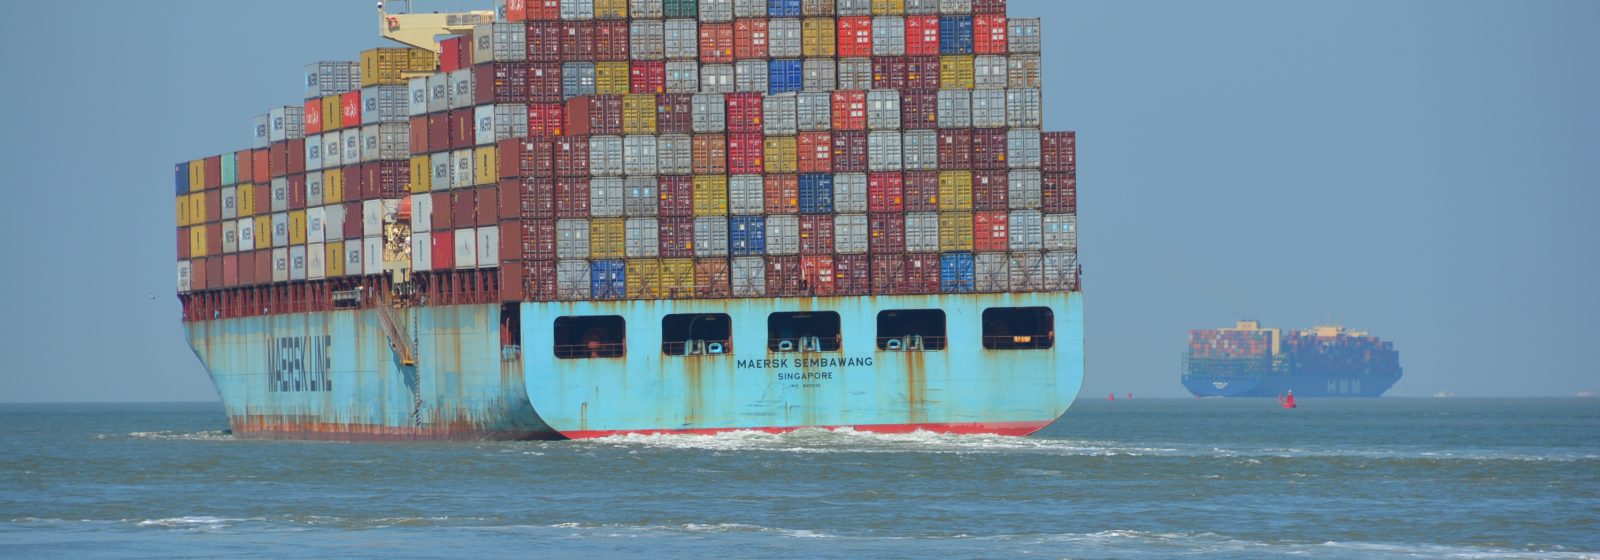 De 'Maersk Sembawang' (7.250 teu) afvarend op de Westerschelde